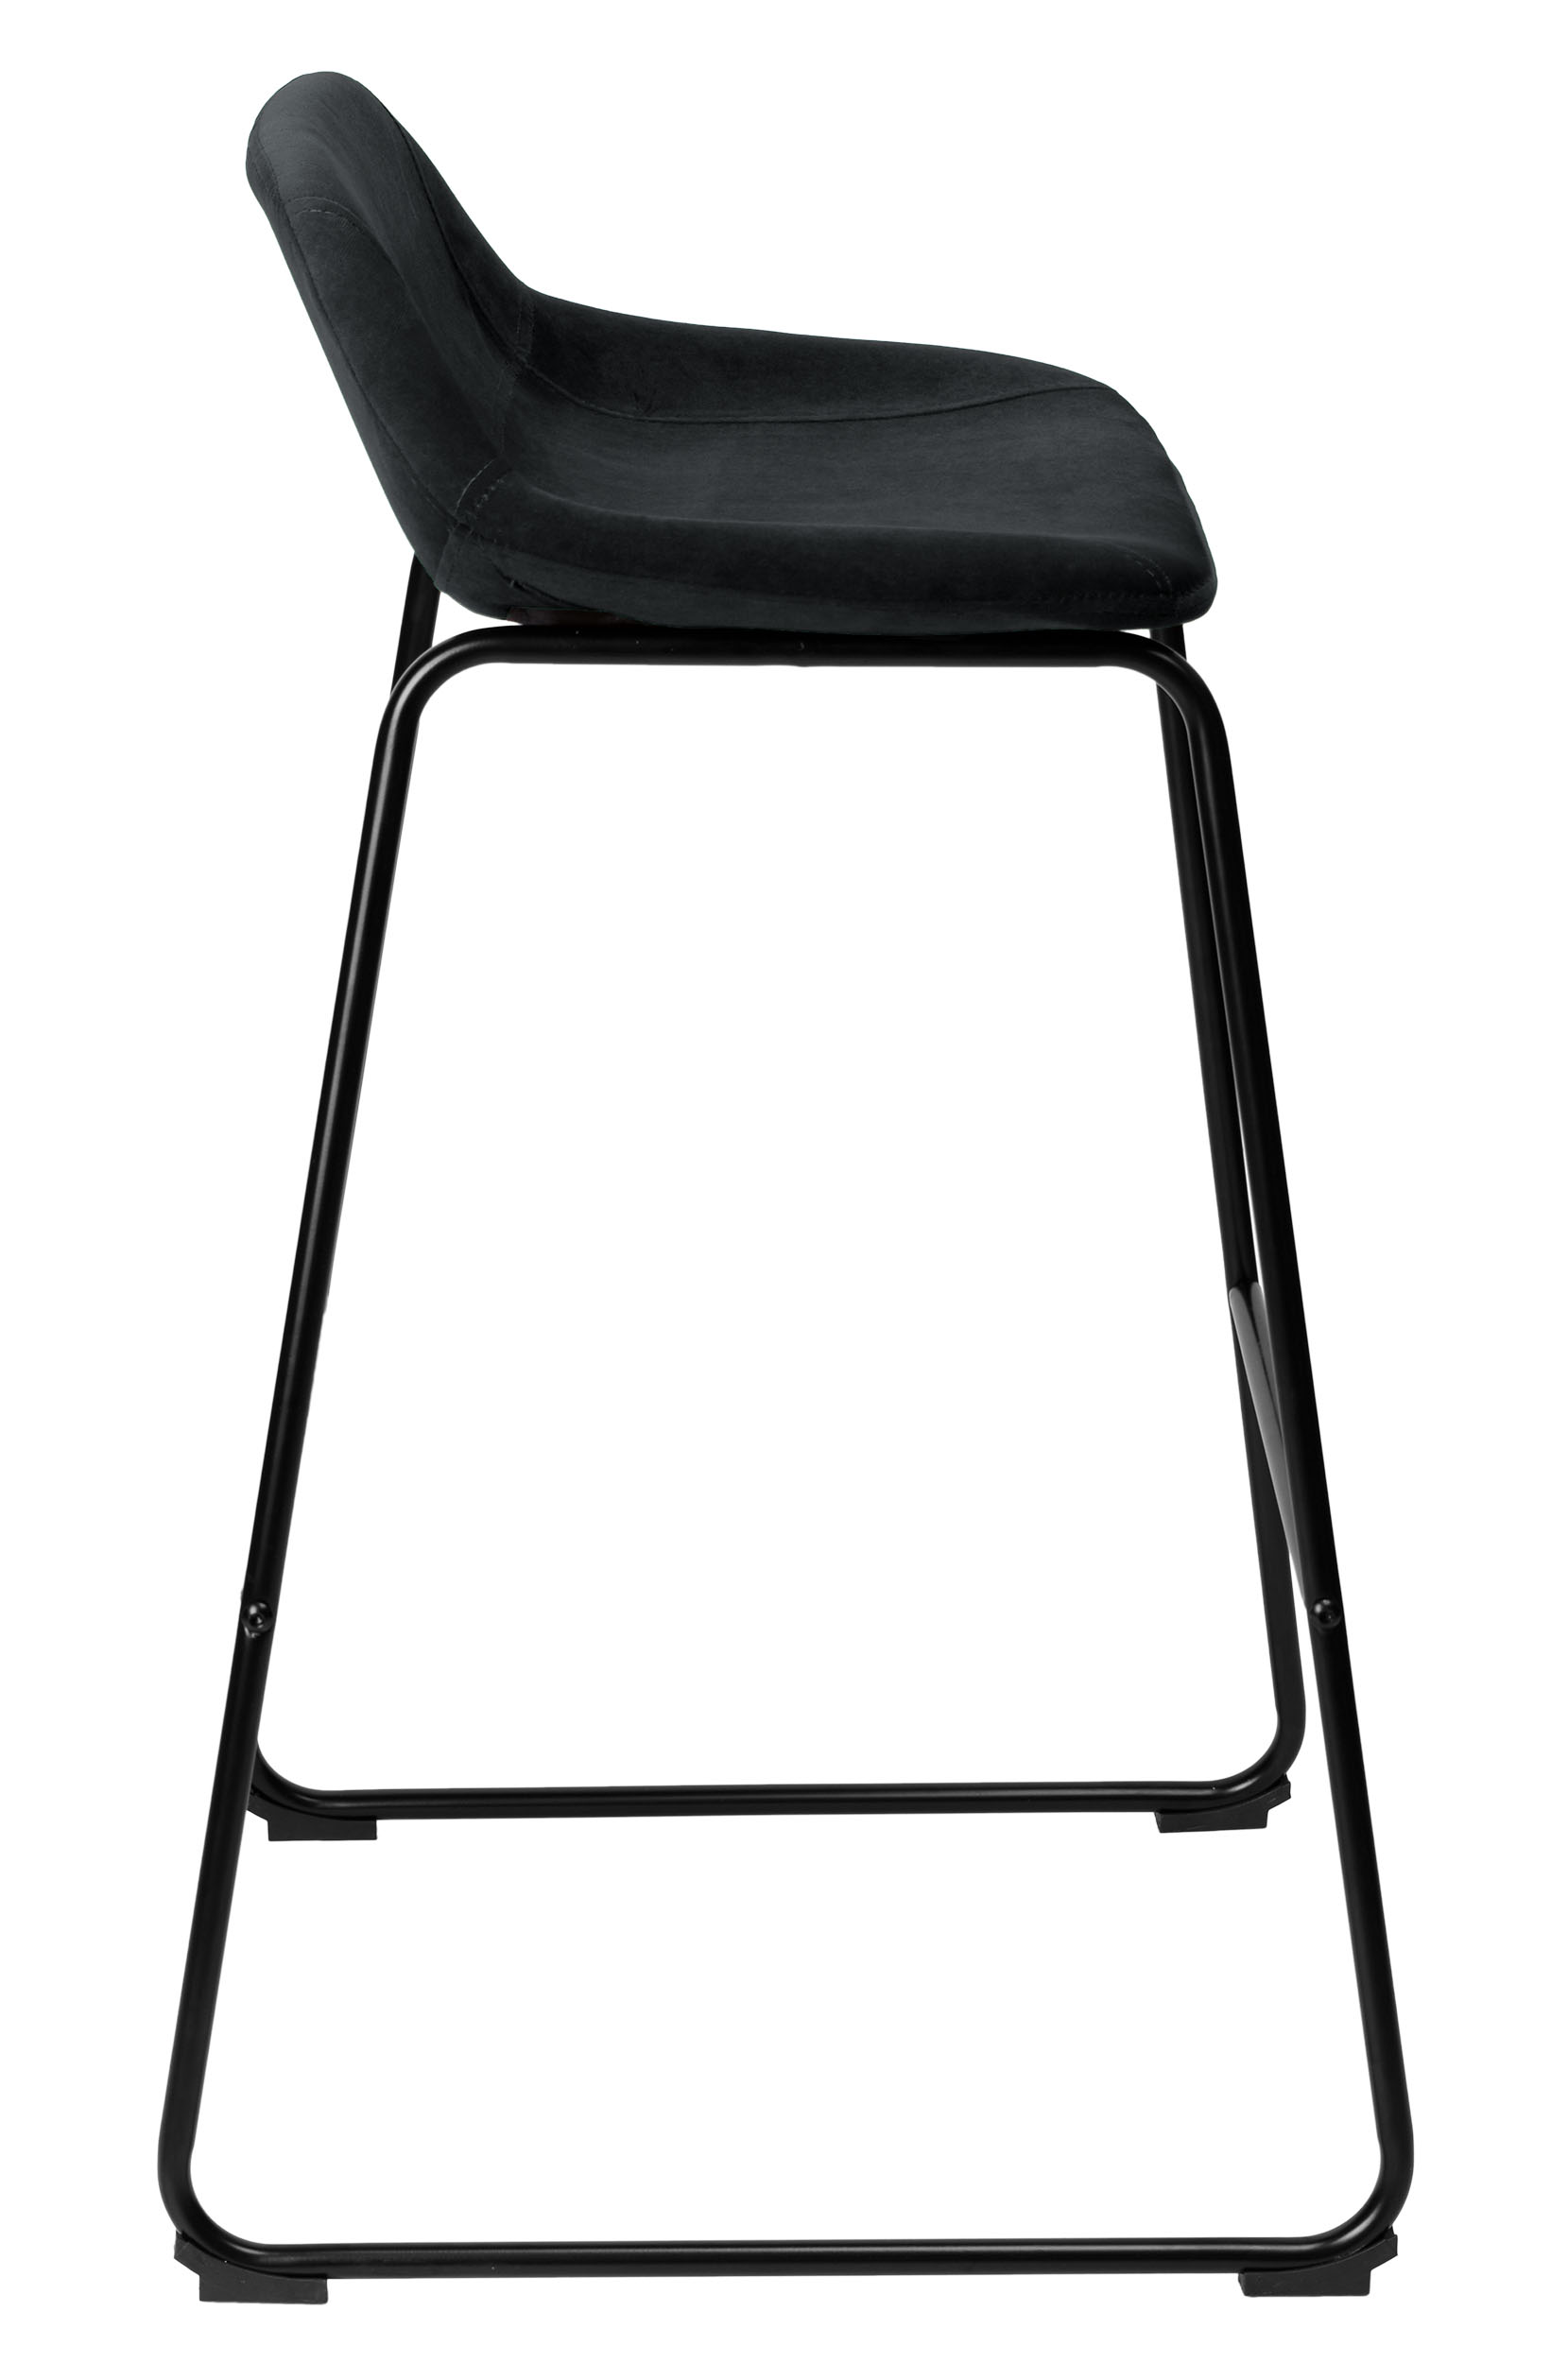 Krzesło barowe hoker Sligo czarne Velvet 2 sztuki